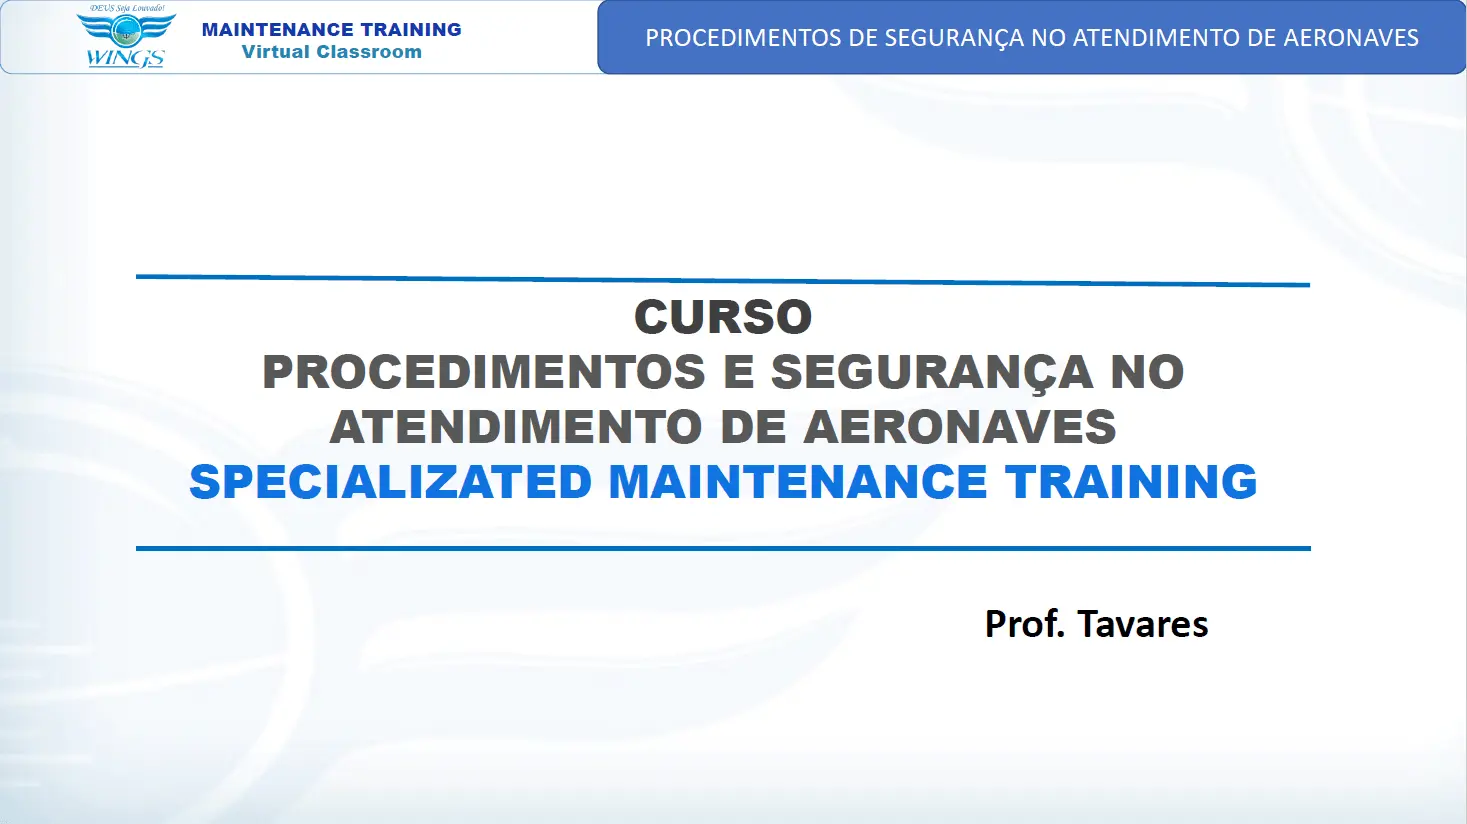 Procedimentos e Segurança no Atendimento de Aeronaves | Maintenance Training